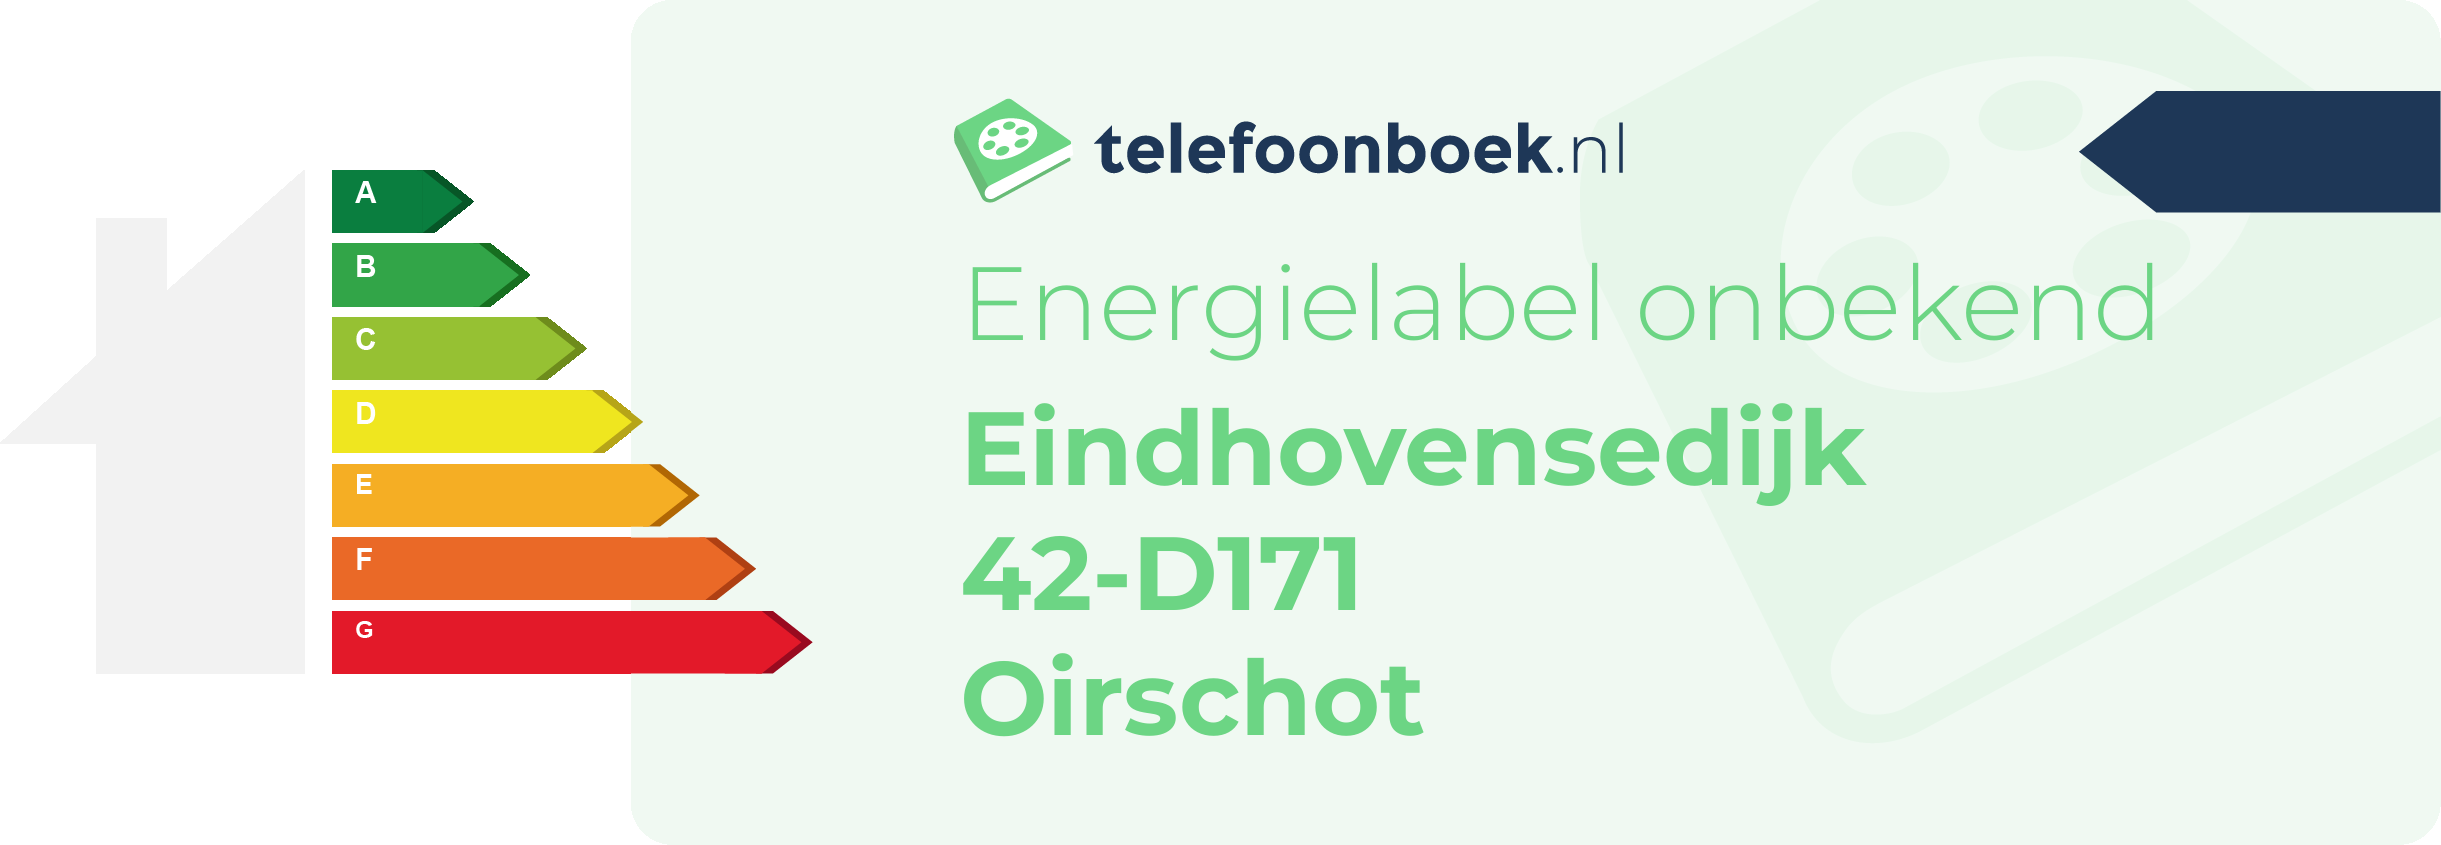 Energielabel Eindhovensedijk 42-D171 Oirschot